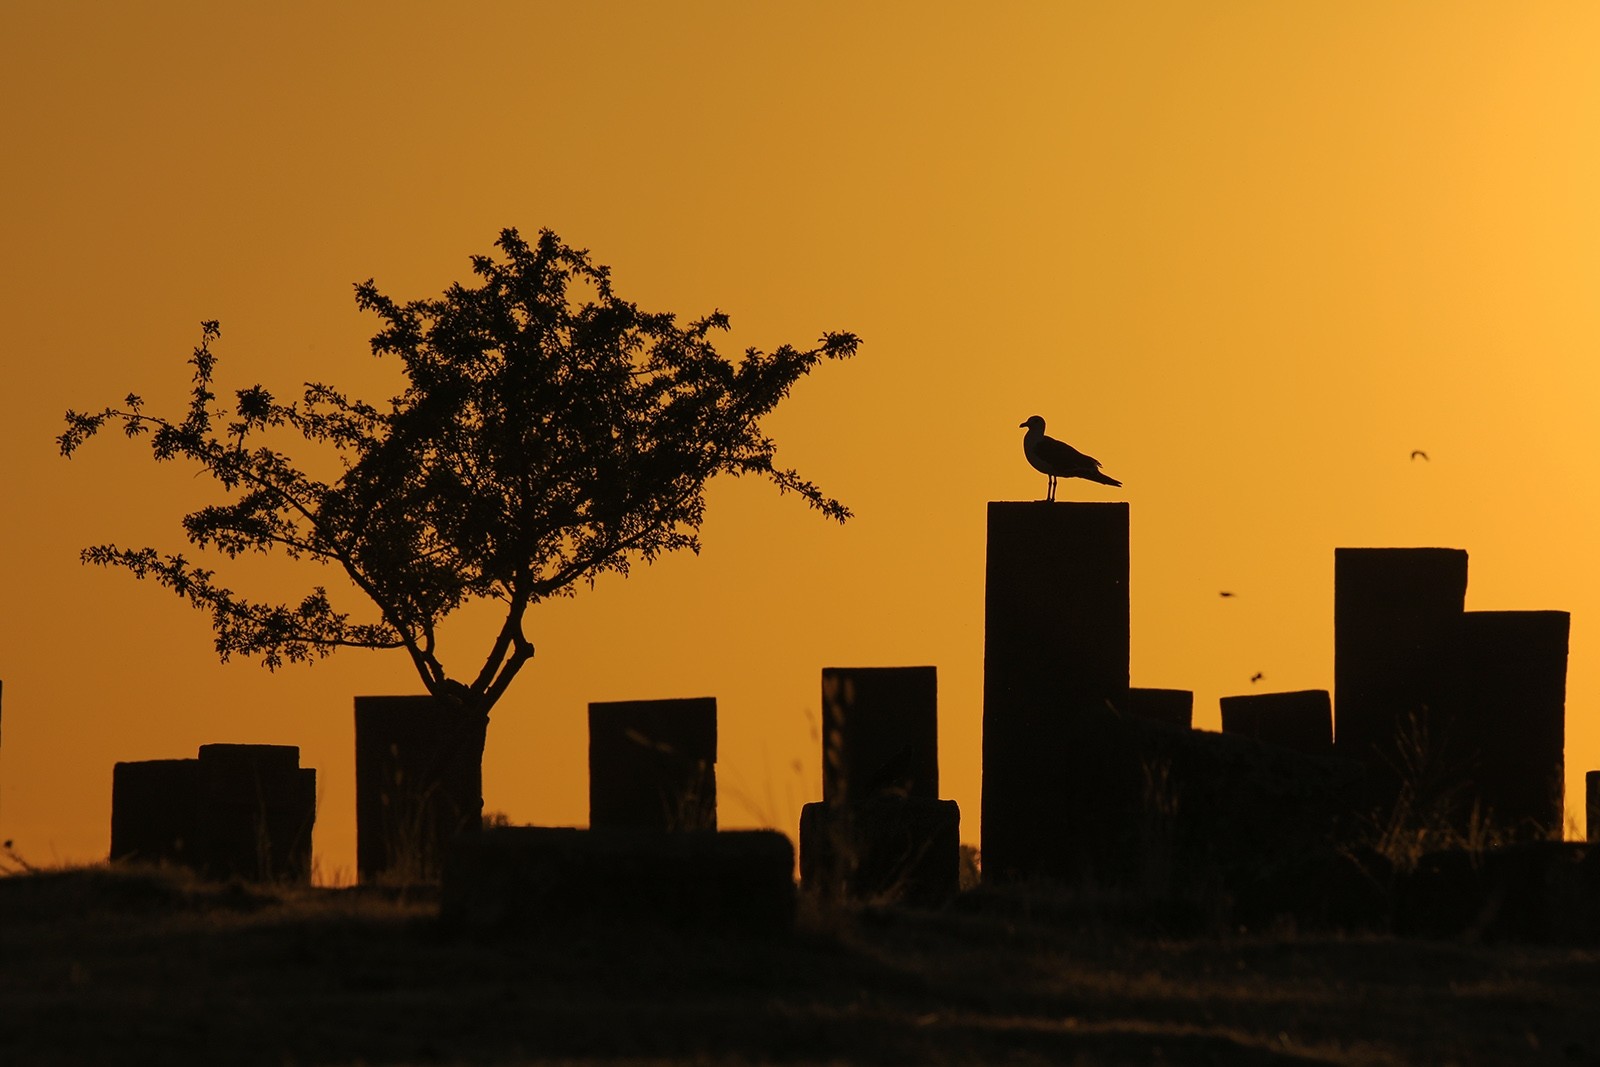 Древние гробницы Ахлата — крупнейшее тюрко-мусульманское кладбище в мире